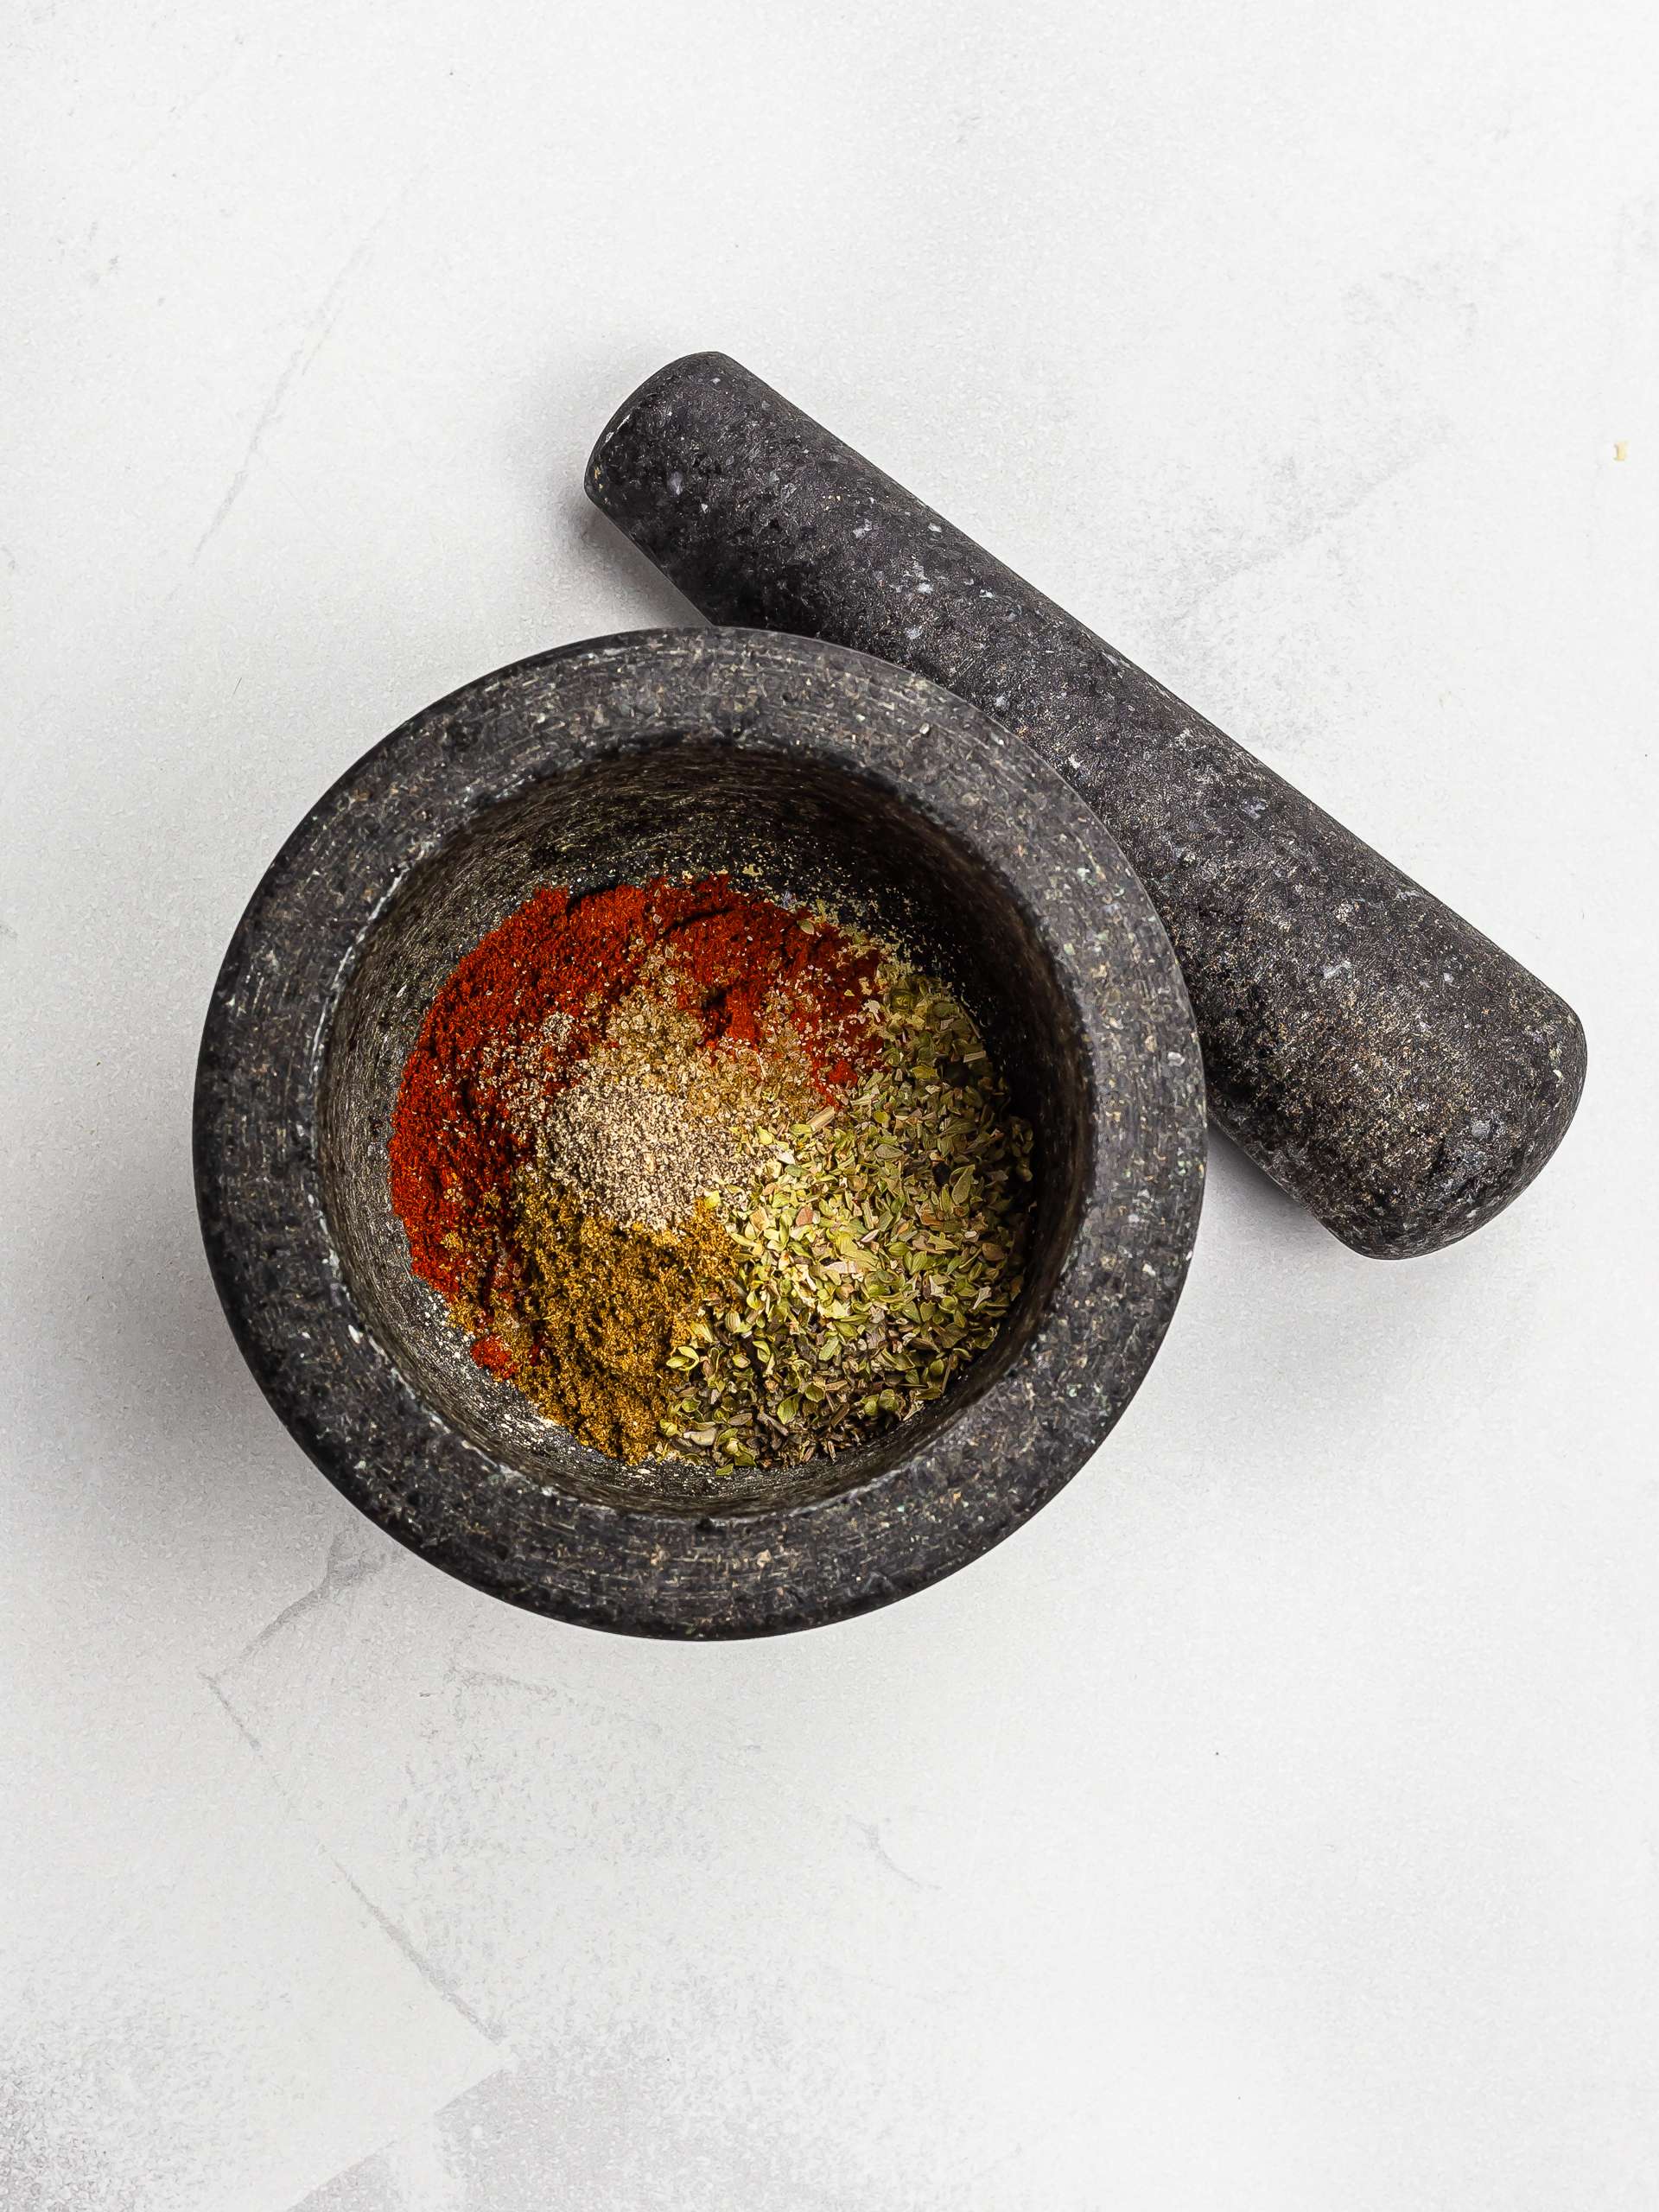 red robin seasoning ingredients in a mortar